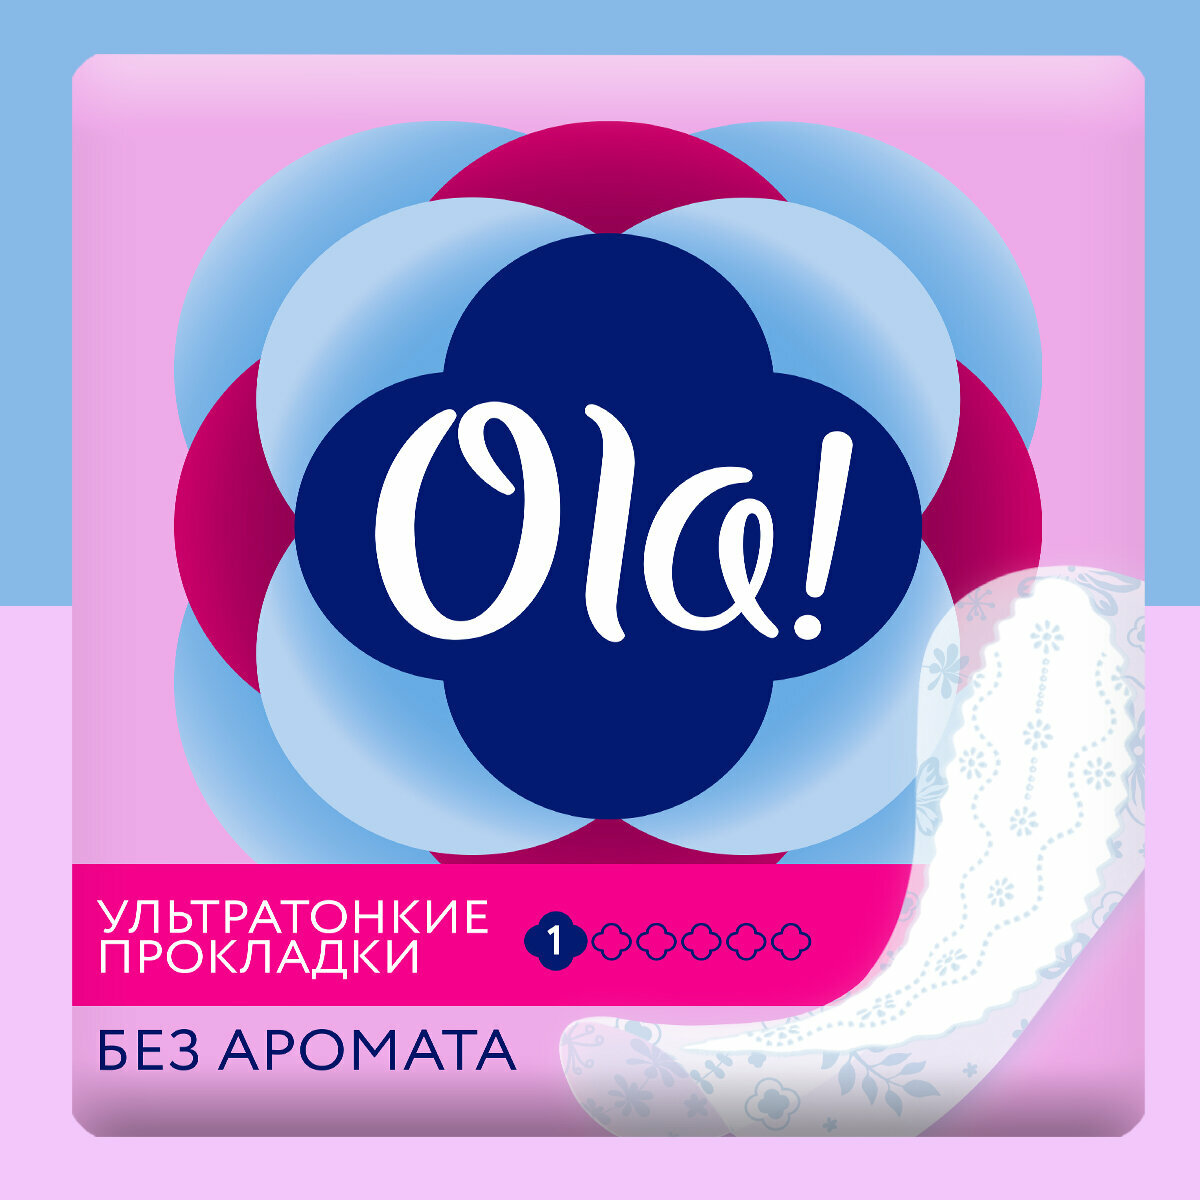 Ежедневные прокладки Ola! Light стринг-мультиформ, 60шт. - фото №1